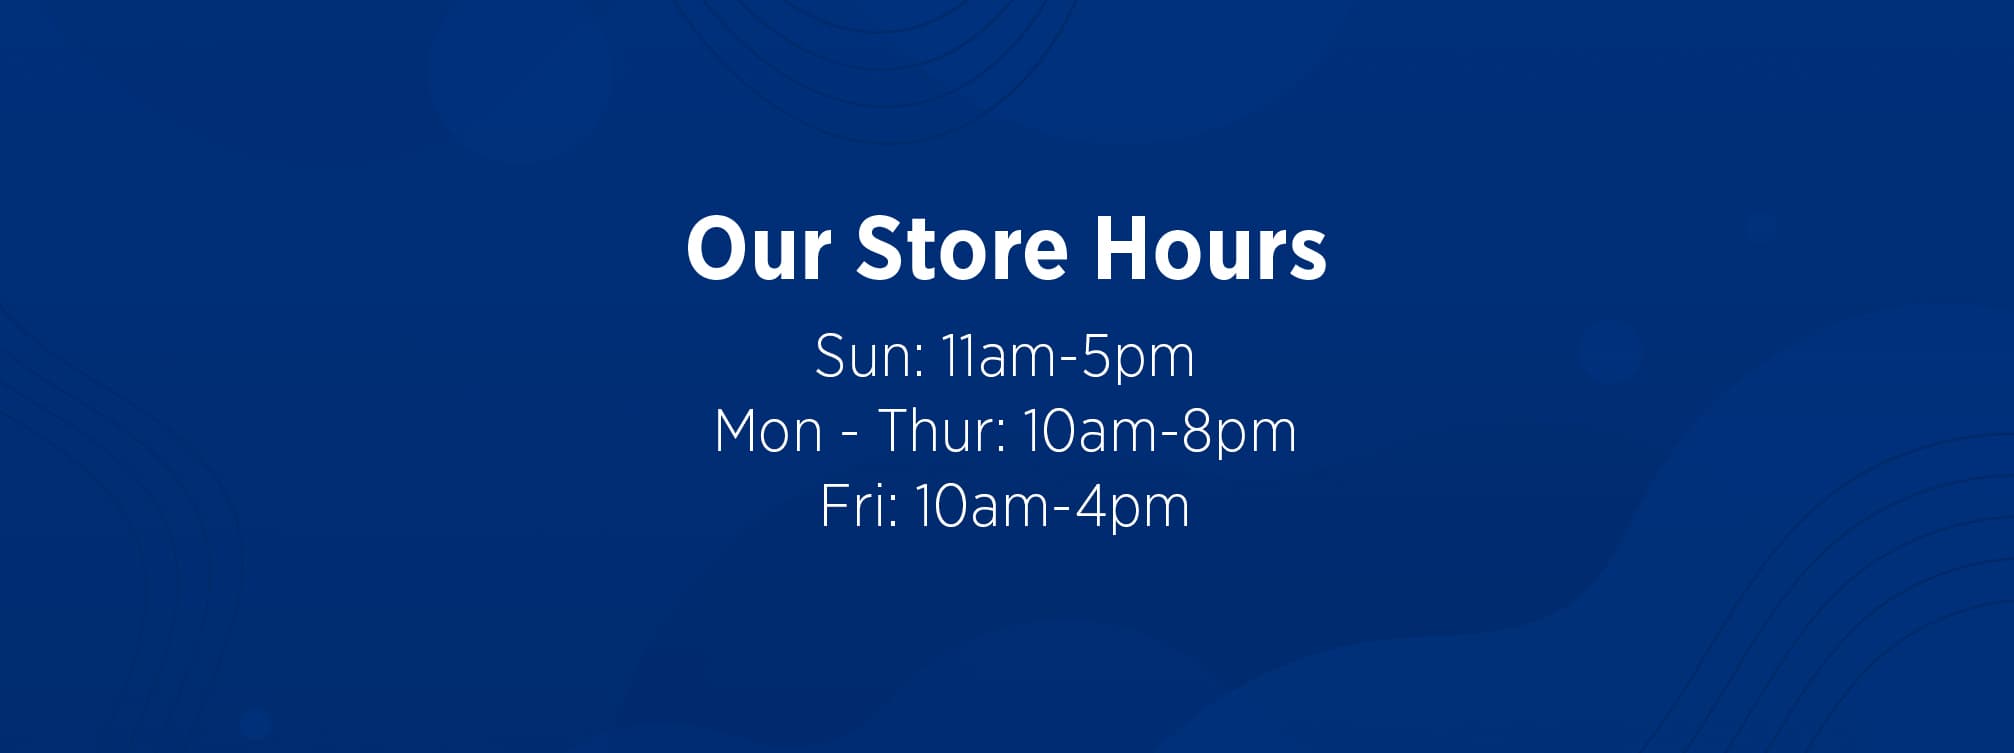 Store Hours: Sun: 11am-5pm | Mon-Thur: 10am-8pm | Fri: 10am-4pm